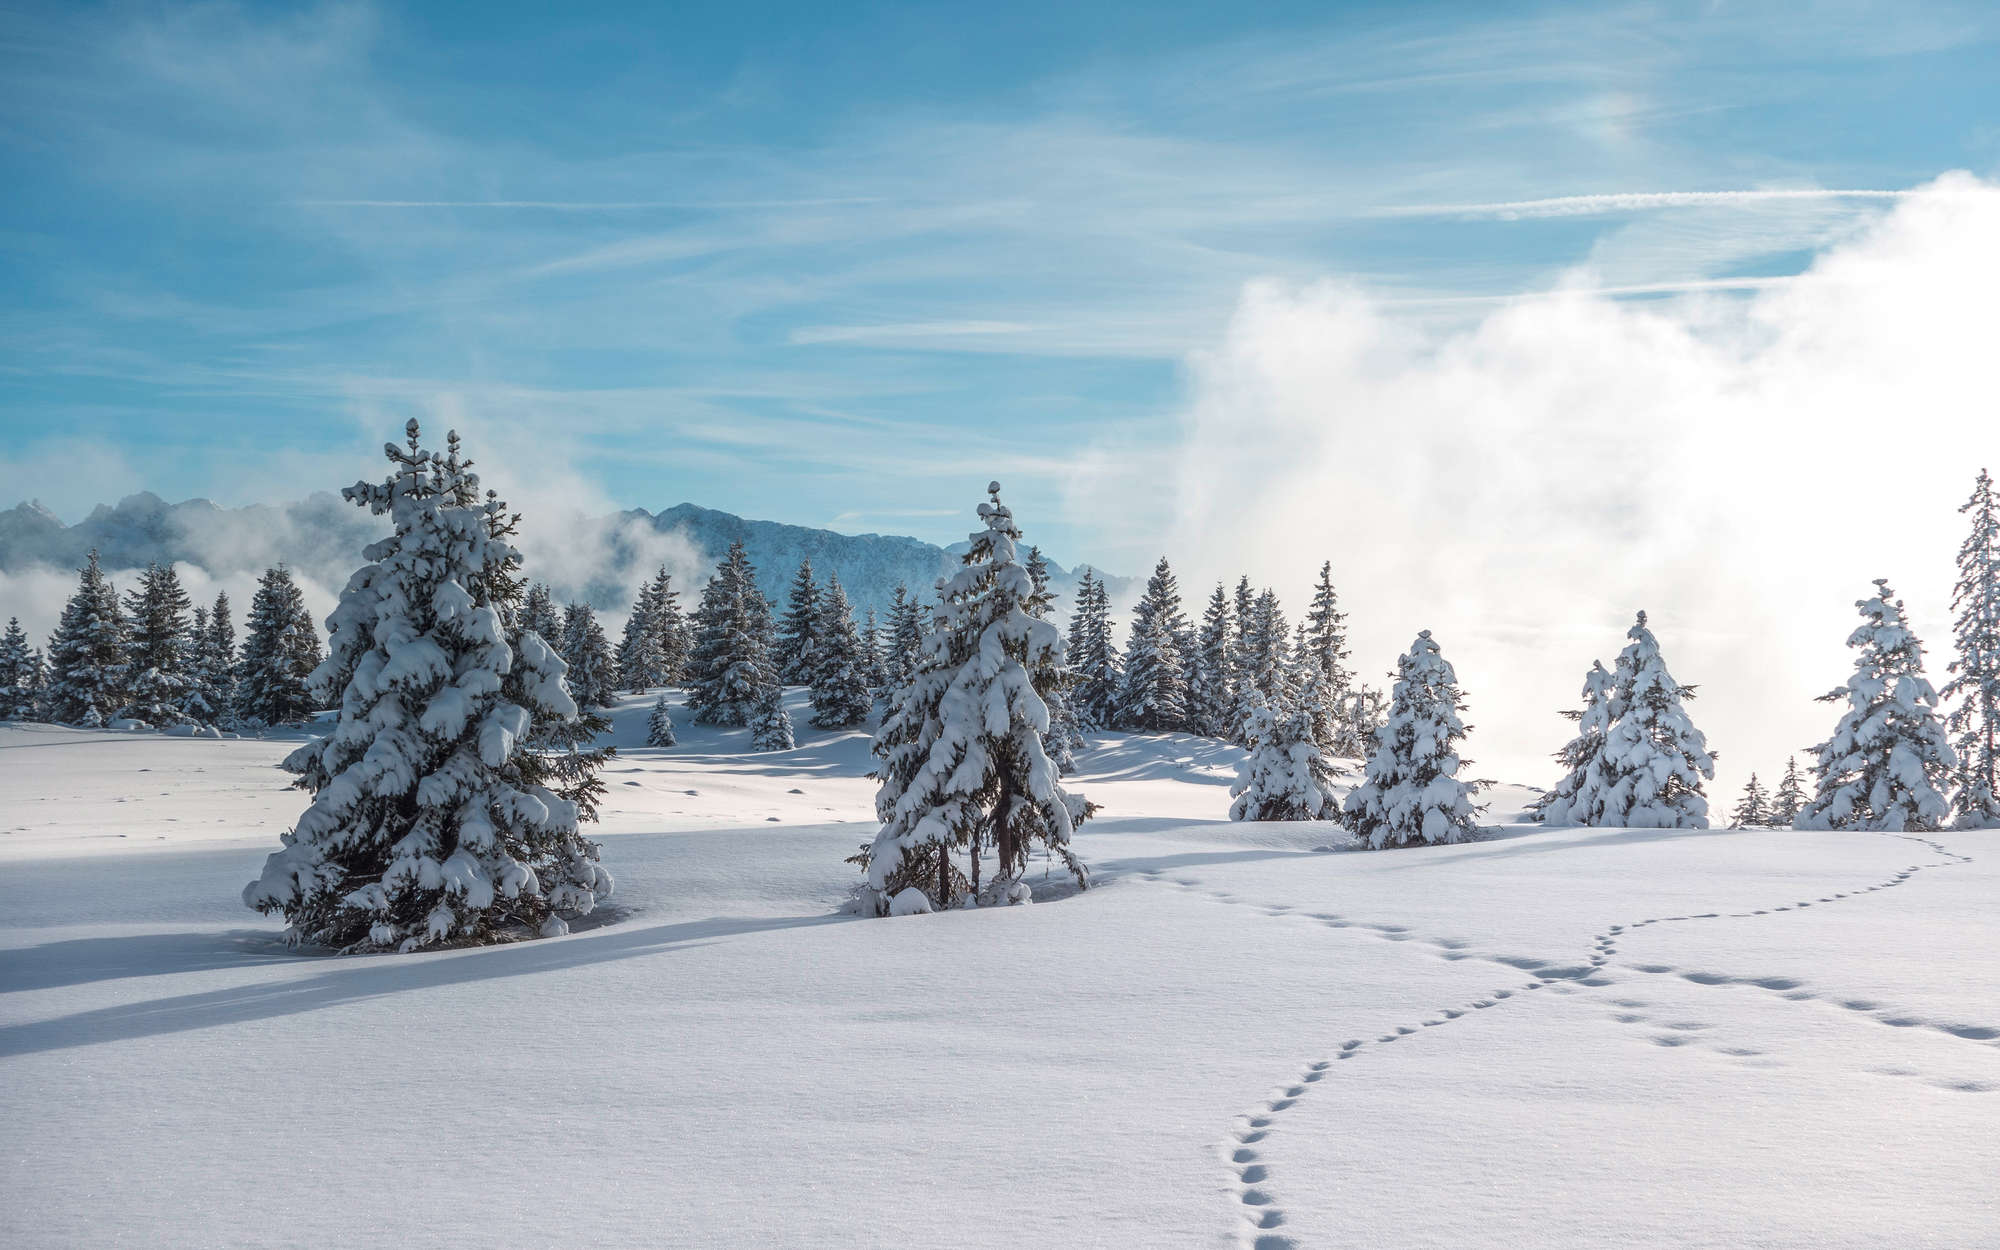             Fotomurali Neve e impronte nella foresta invernale - Materiali non tessuto testurizzato
        